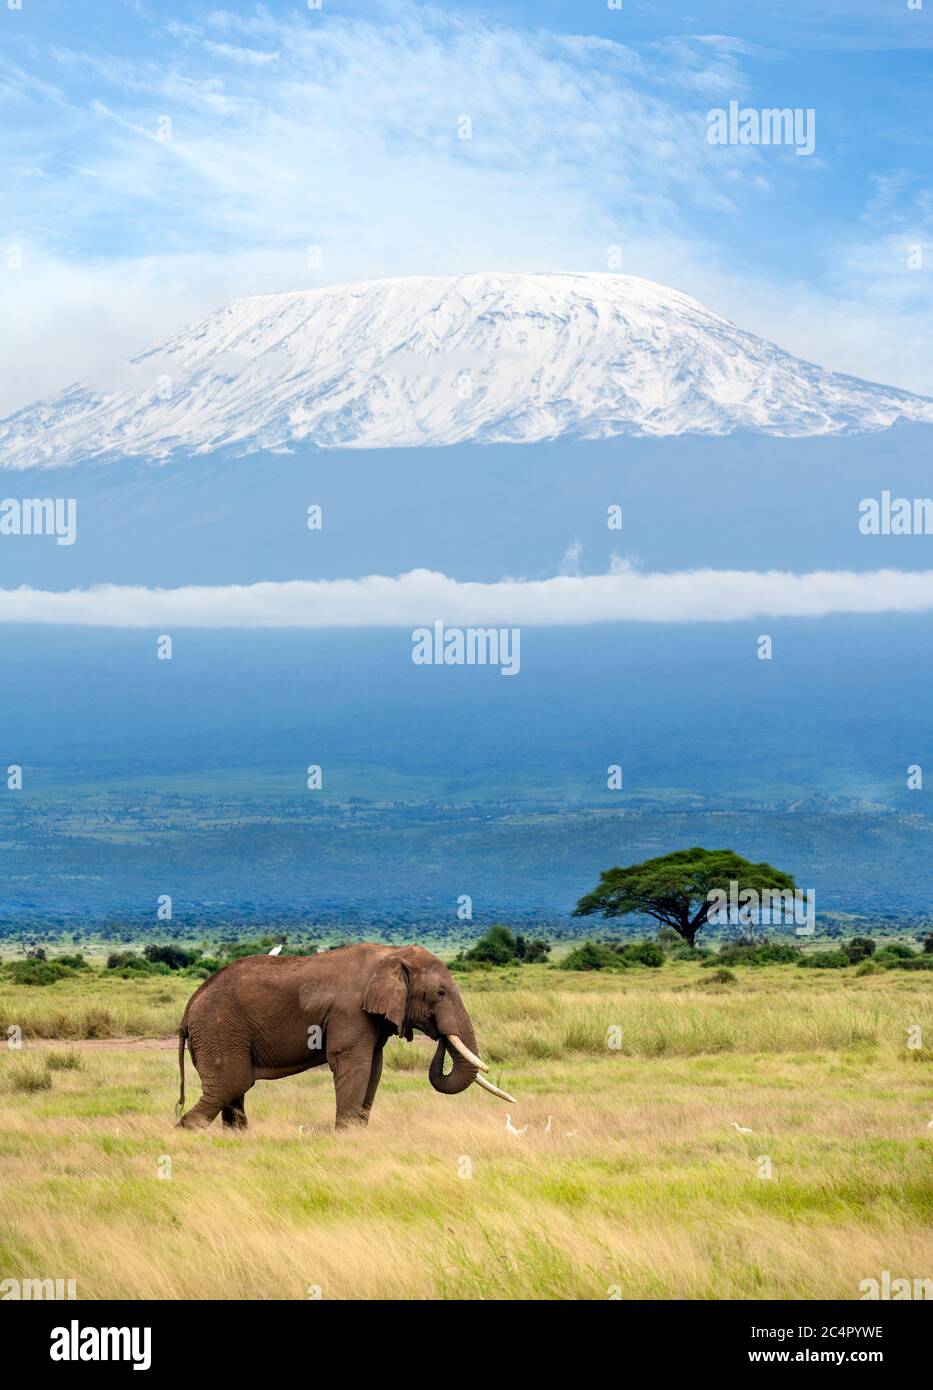 Safari in Kenya. Parco Nazionale di Amboseli. Elefante africano di cespuglio (Loxodonta africana) con il Monte Kilimanjaro alle spalle, Parco Nazionale di Amboseli, Kenya, Africa Foto Stock